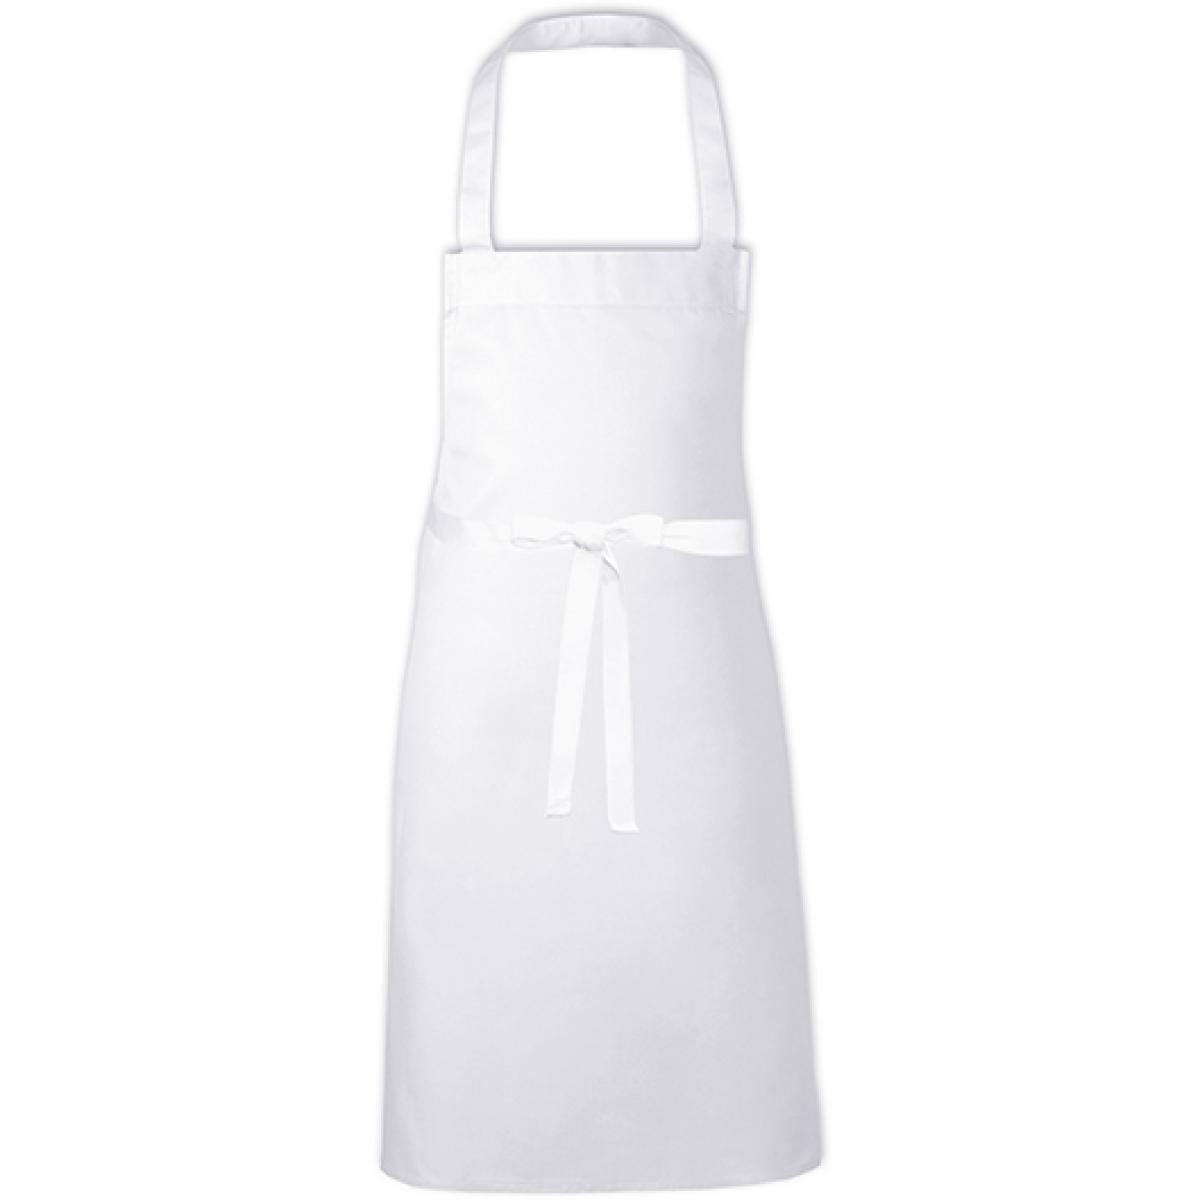 Hersteller: Link Kitchen Wear Herstellernummer: BBQC8070 Artikelbezeichnung: Cotton Barbecue Apron - Grillschürze Farbe: White